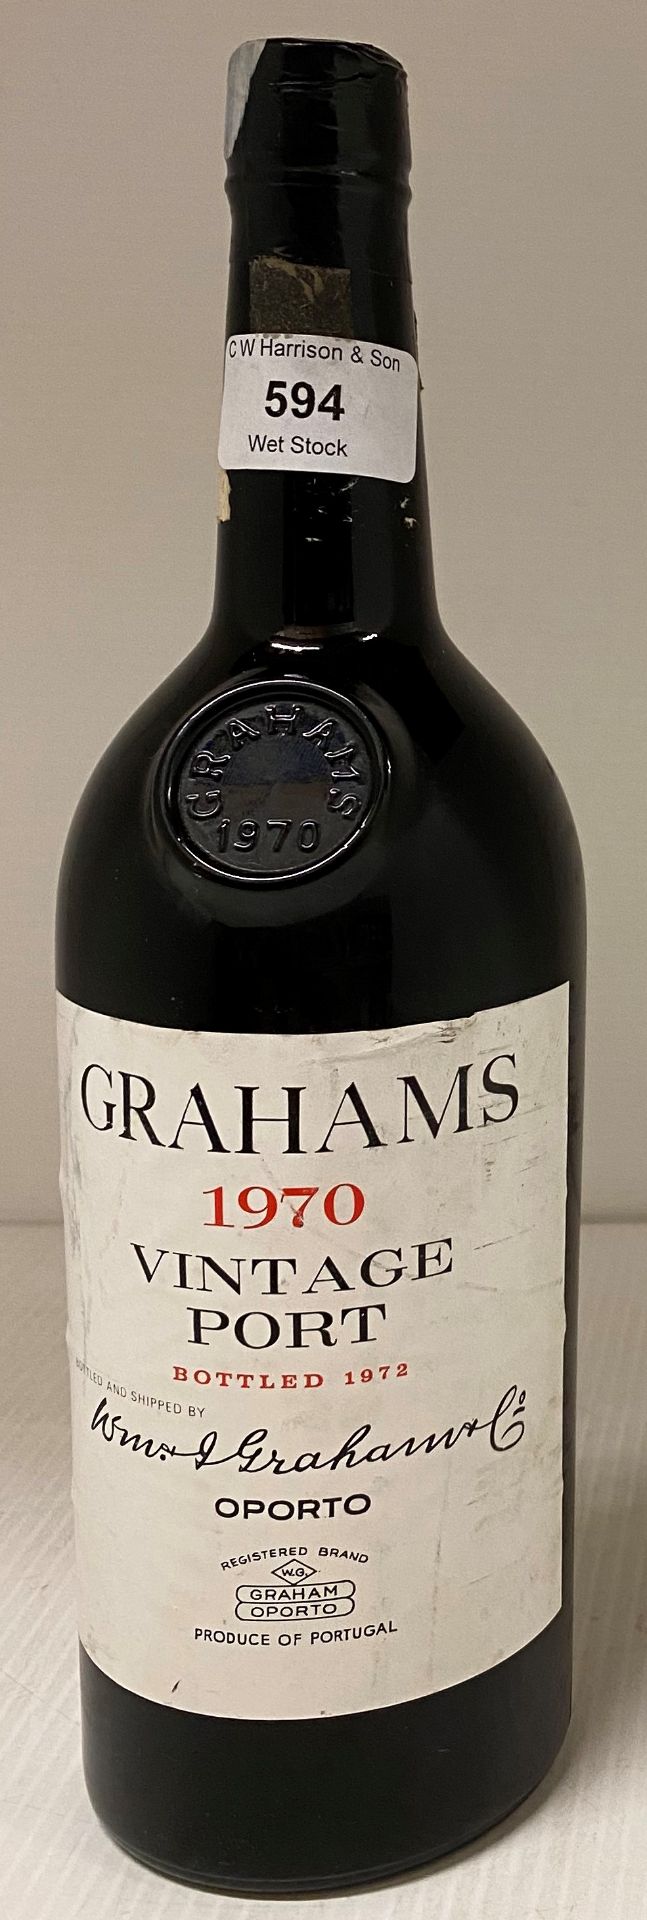 Grahams Vintage Port, 1970, bottled 1972, 70cl,